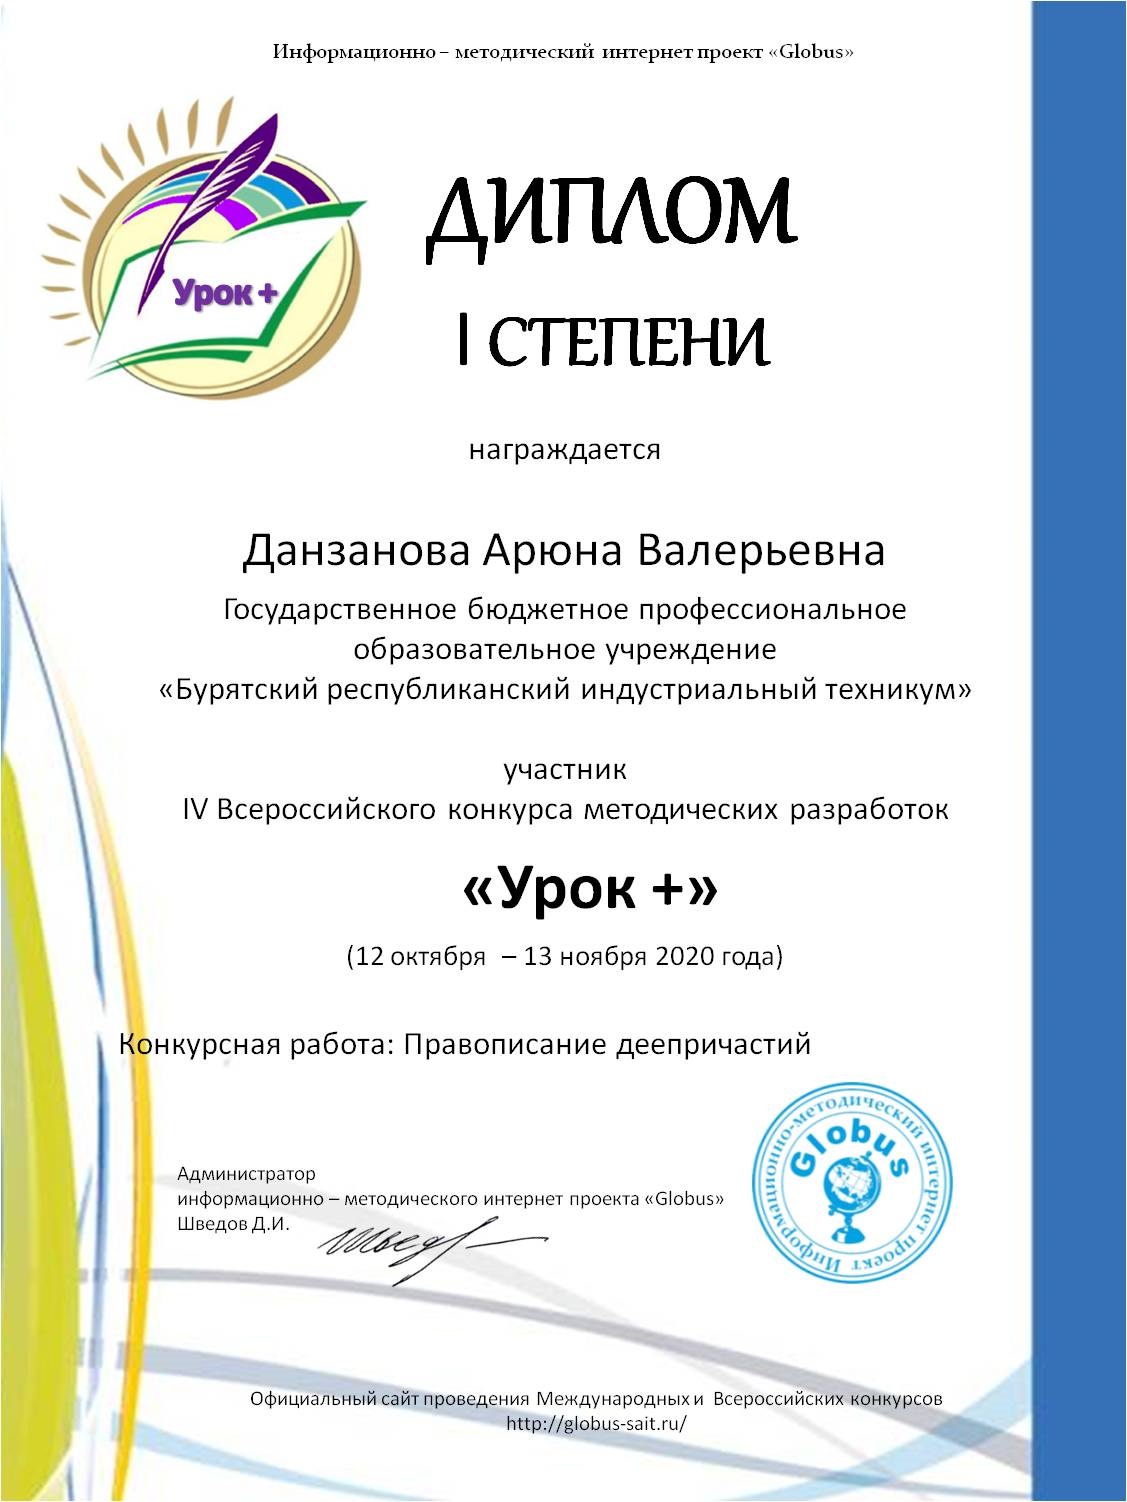 Всероссийский интернет - конкурс методических разработок «МастерКласс ArtBerry®»